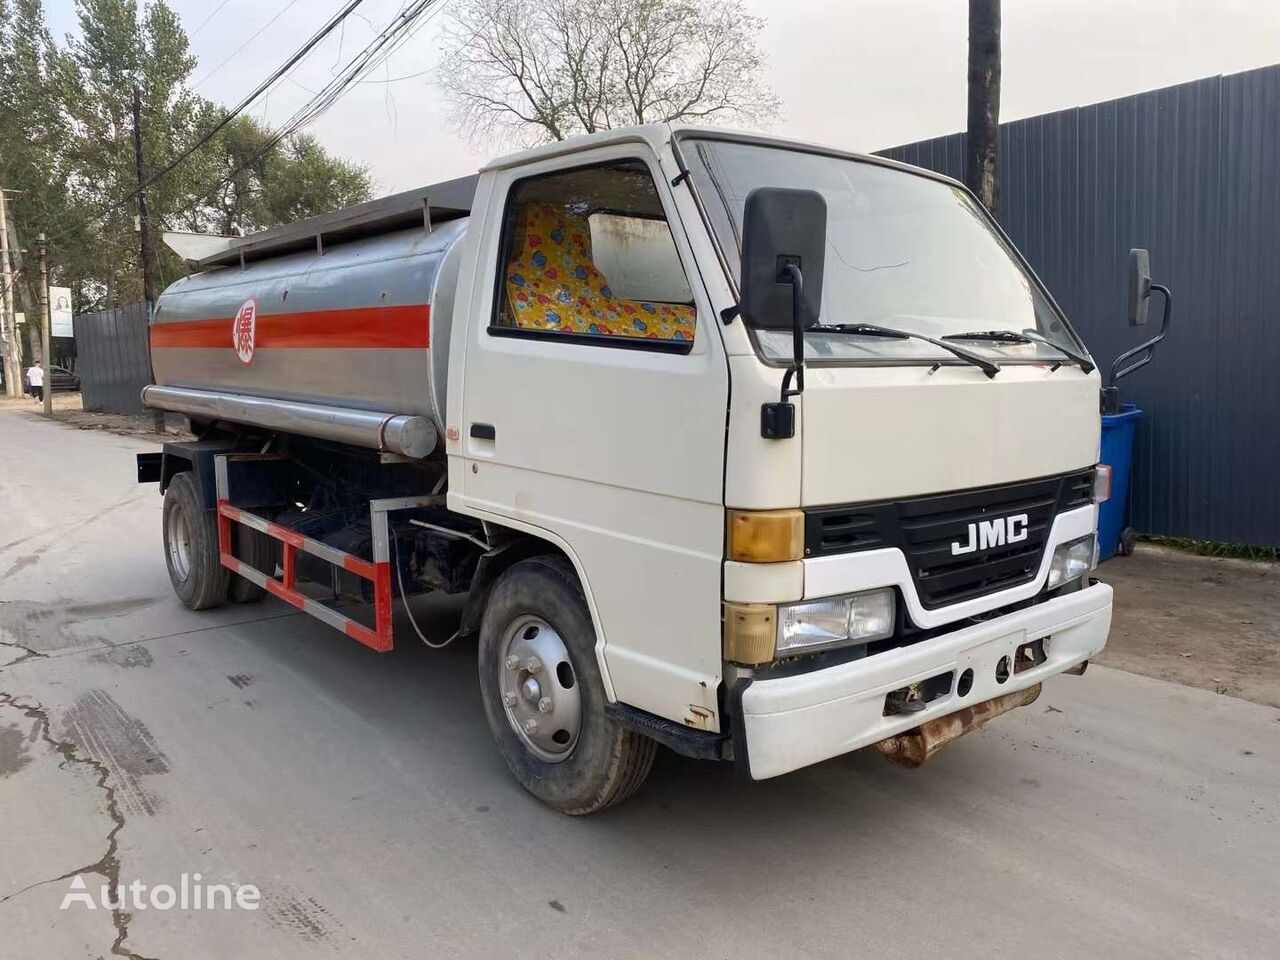 Samochód ciężarowy cysterna dla transportowania paliwa JMC 4x2 drive fuel tank truck 5 tons: zdjęcie 2